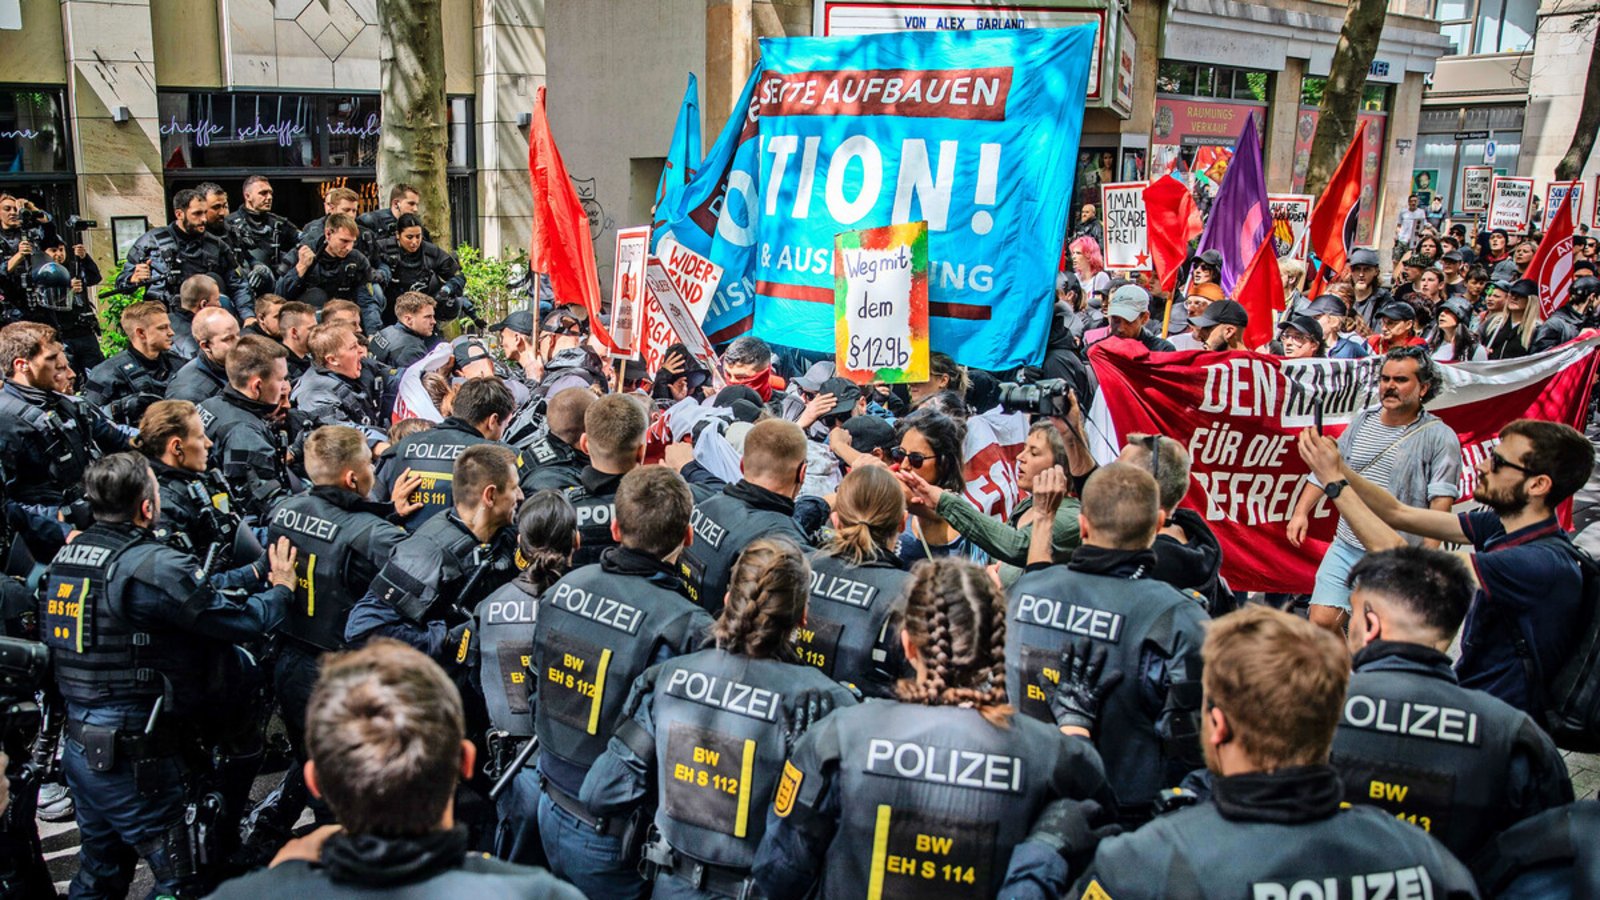 Bei einer Demonstration am Tag der Arbeit, die nichts mit dem DGB zu tun hatte, wurden Polizisten angegriffen.Foto: Lg/Christoph Schmidt